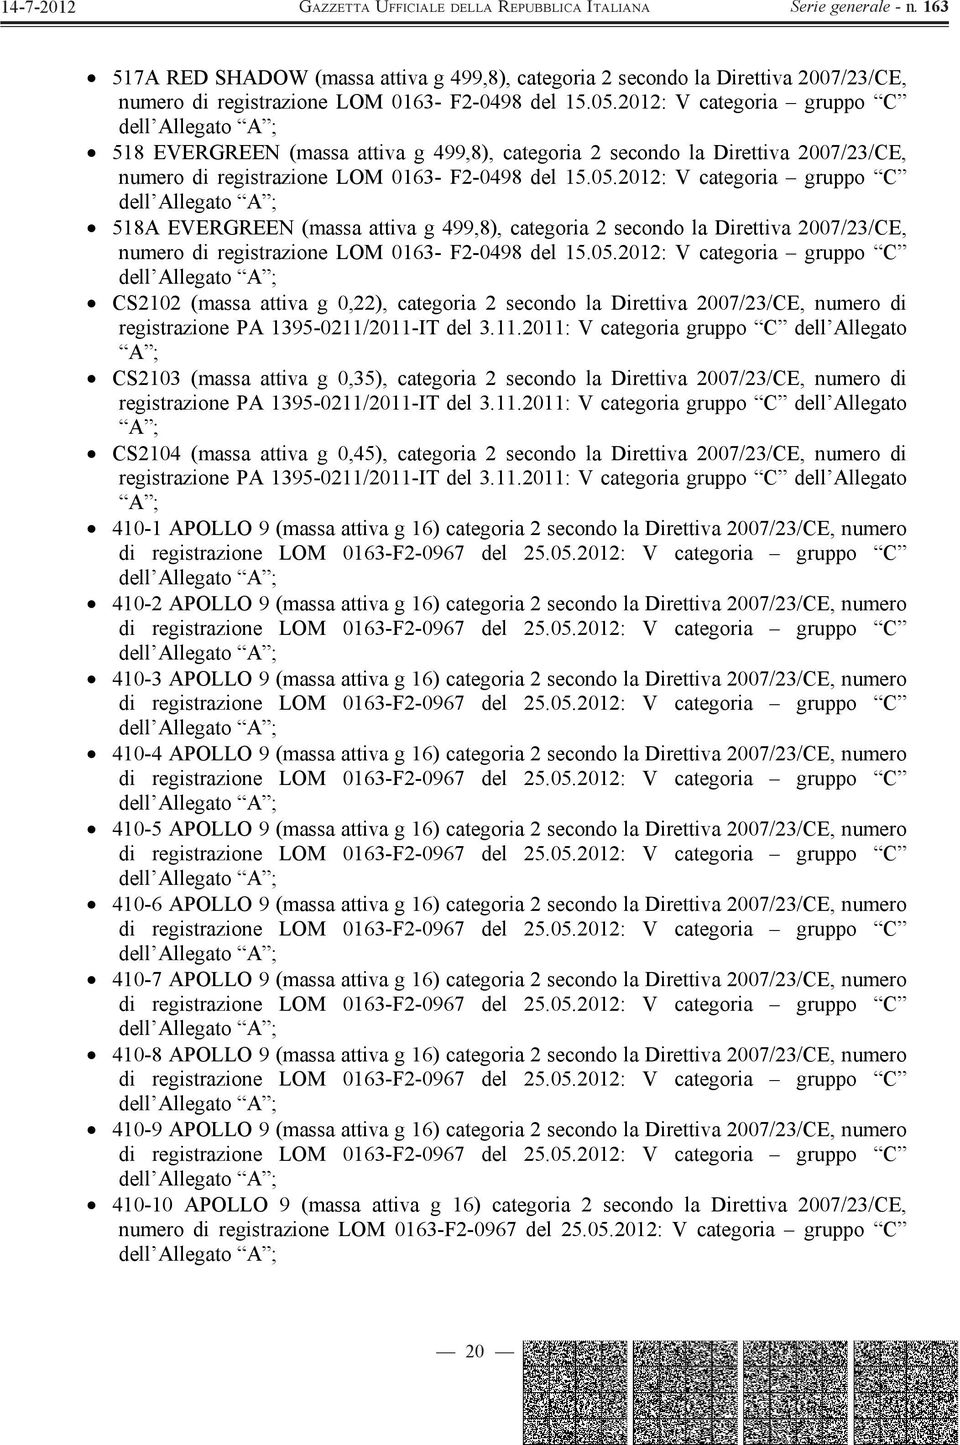 2012: V categoria gruppo C 518A EVERGREEN (massa attiva g 499,8), categoria 2 secondo la Direttiva 2007/23/CE, numero di registrazione LOM 0163- F2-0498 del 15.05.